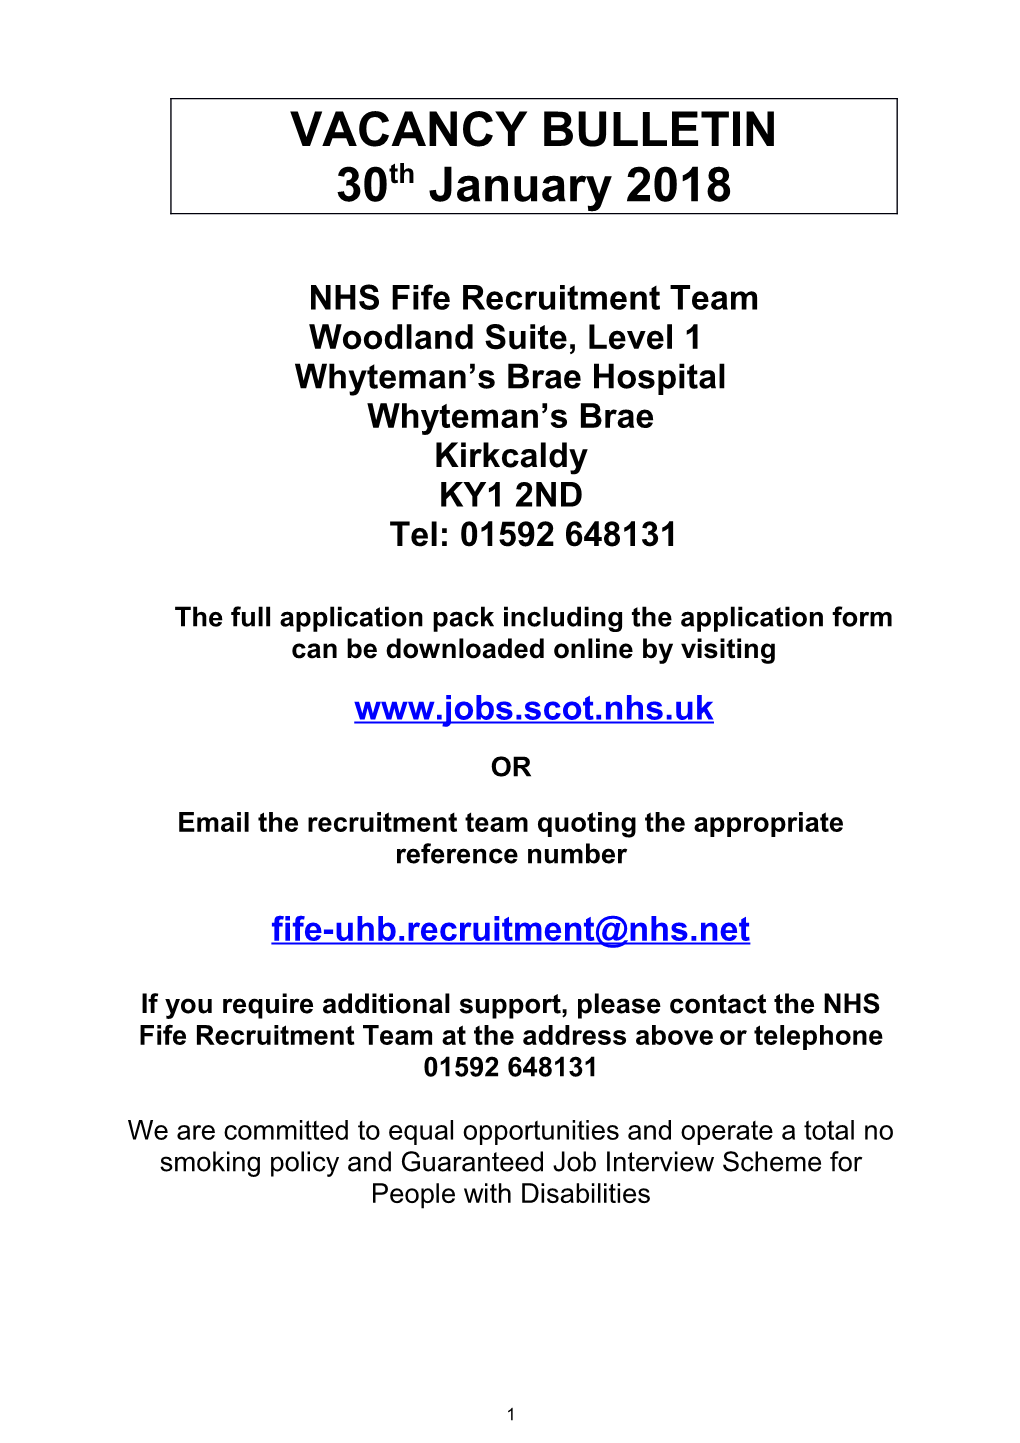 NHS Fife Recruitment Team s1